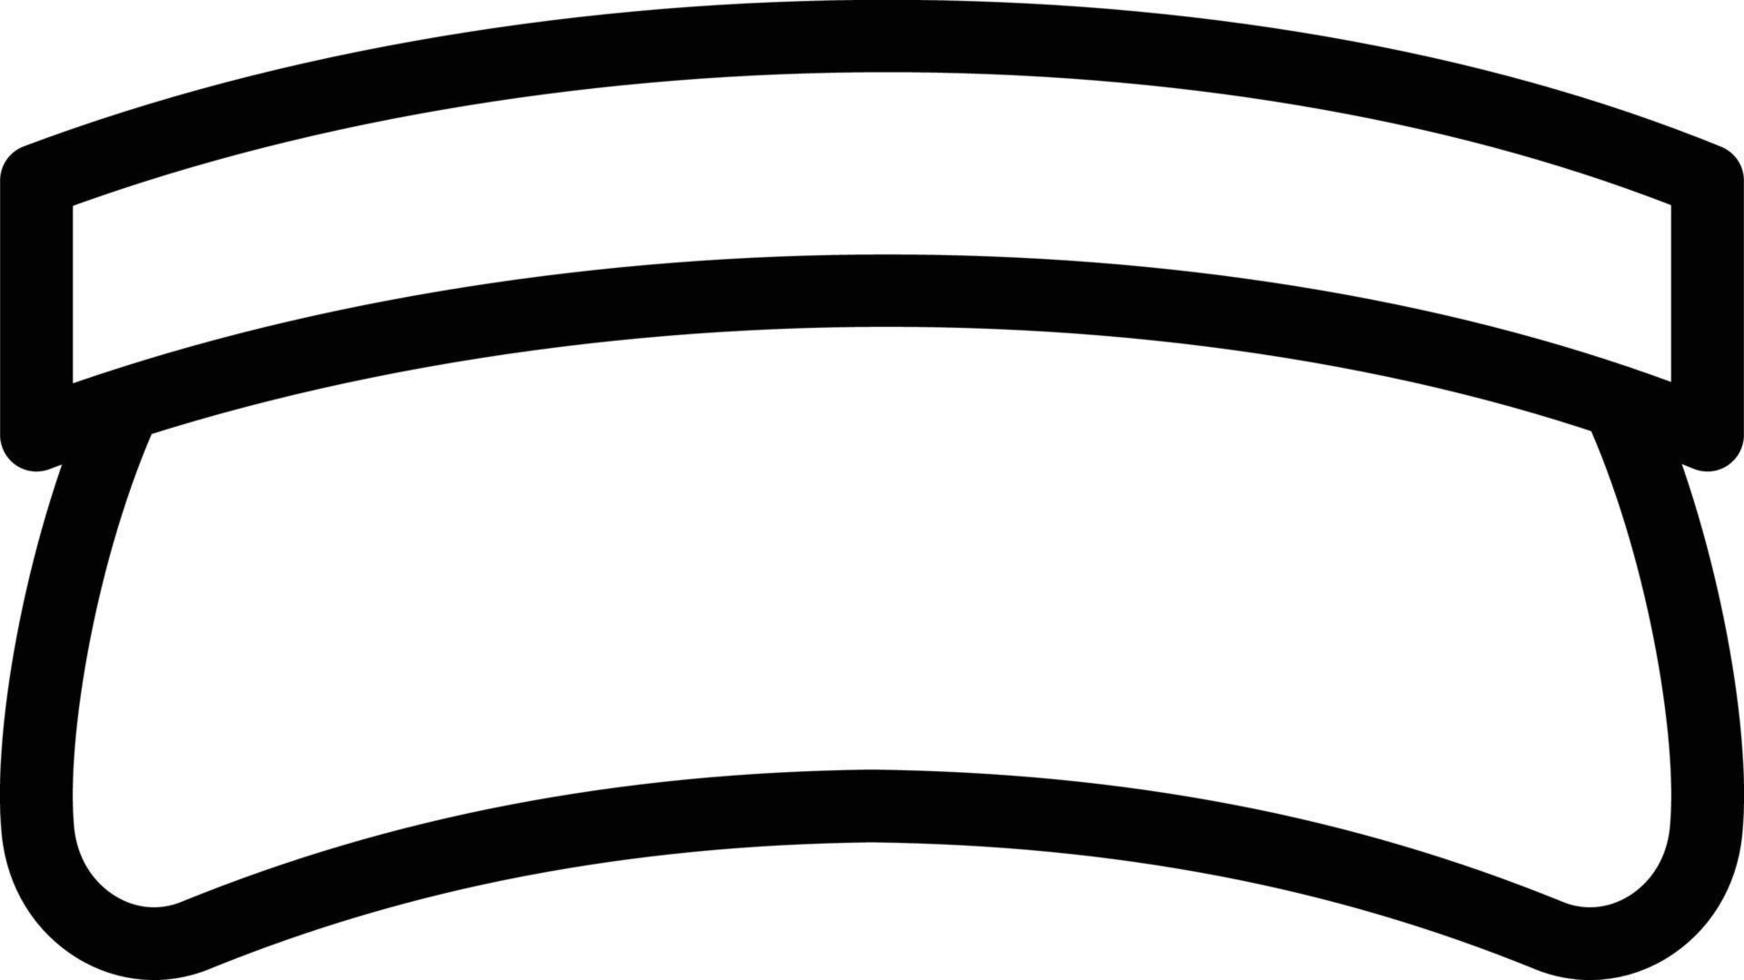 kappenvektorillustration auf einem hintergrund. hochwertige symbole. vektorikonen für konzept und grafikdesign. vektor